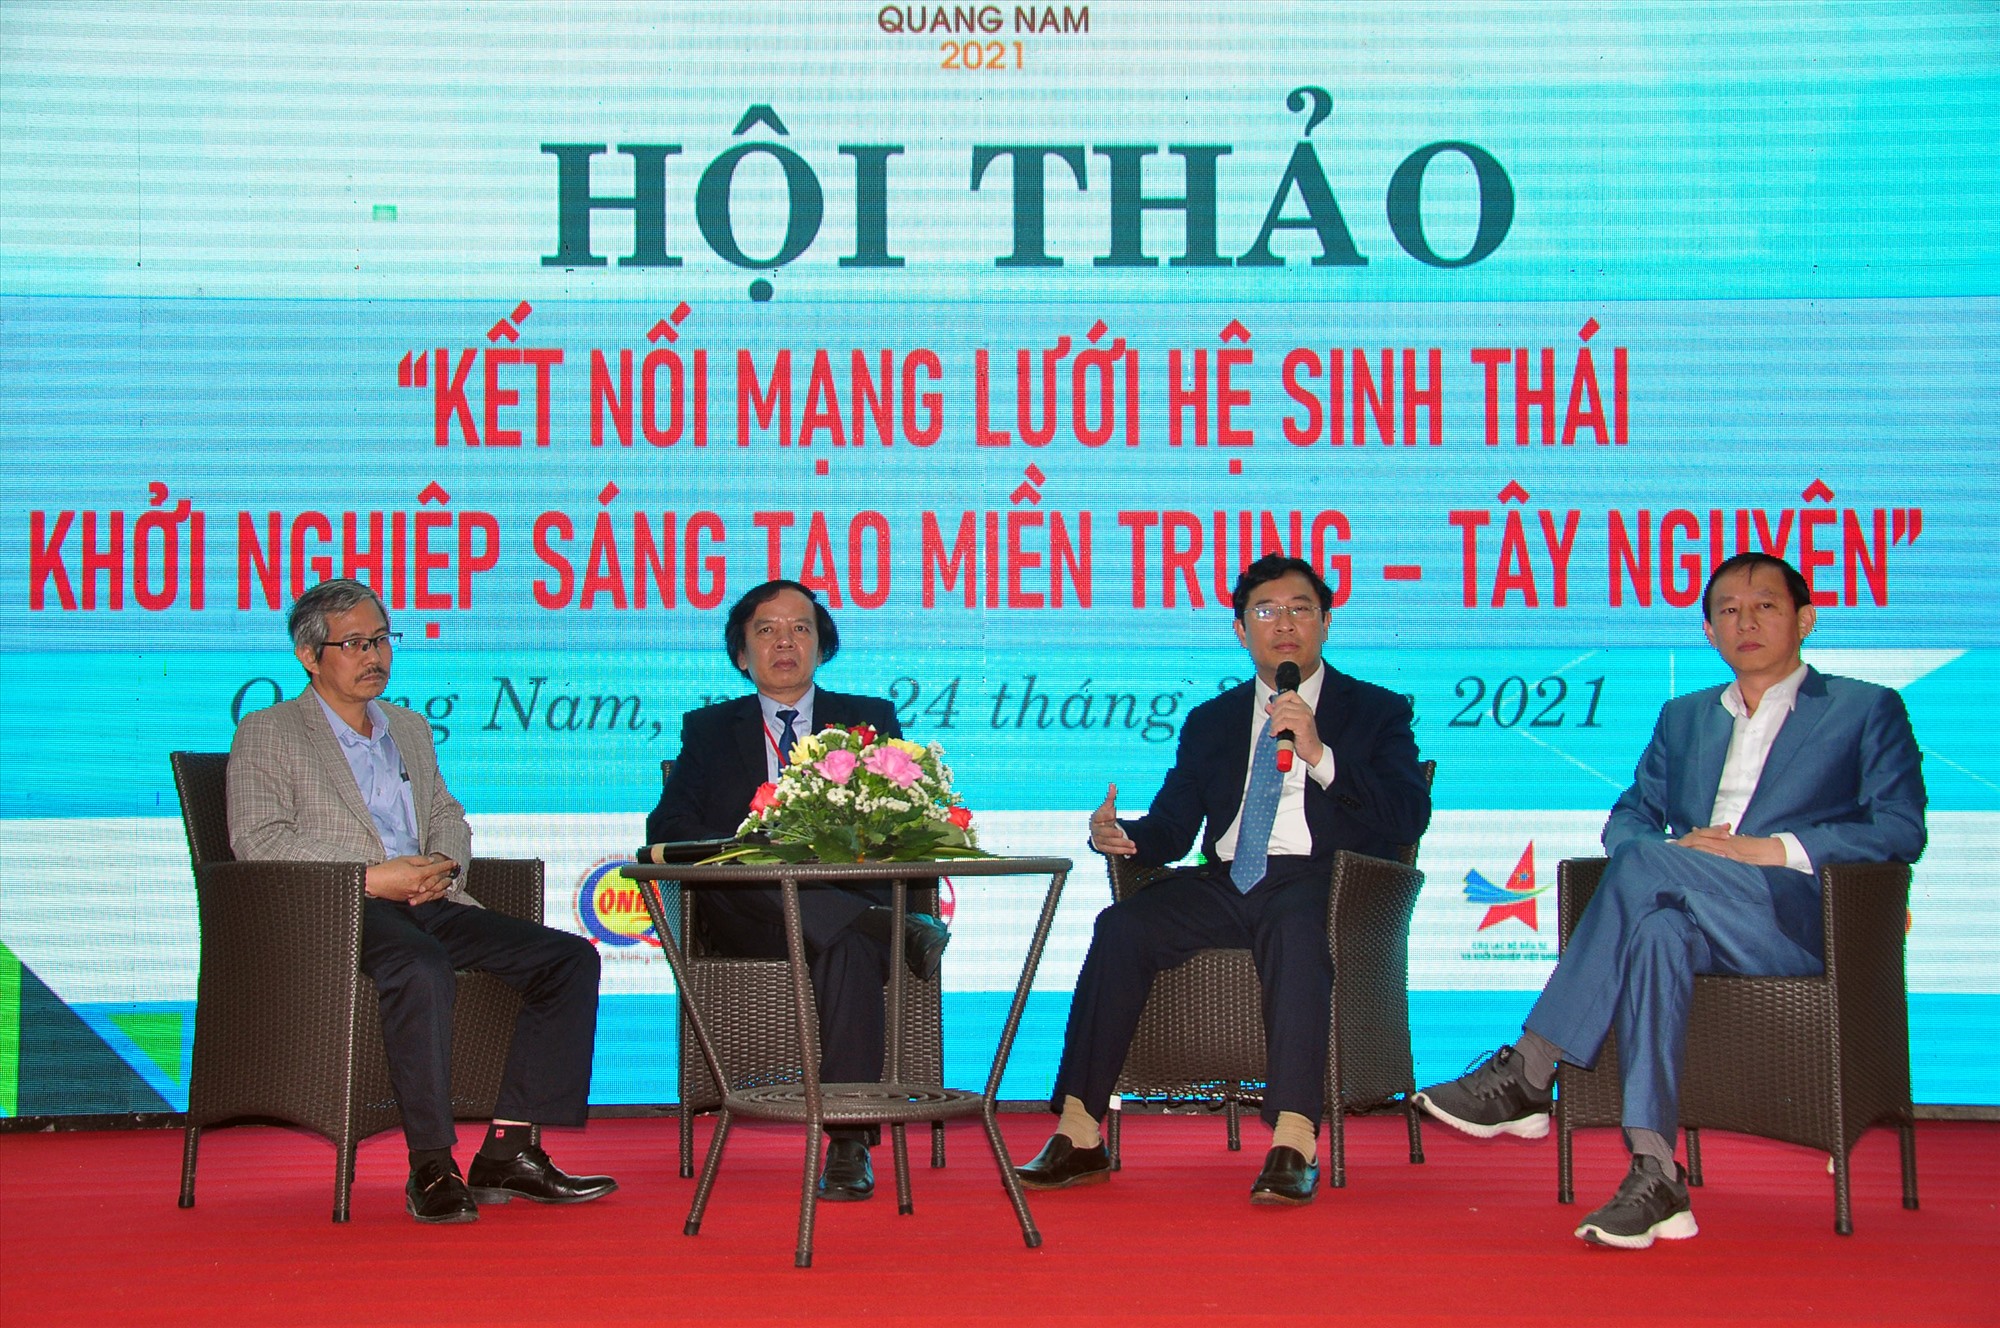 Các hội thảo, diễn đàn về khởi nghiệp sẽ được tổ chức trong suốt những ngày diễn ra TechFest Quảng Nam 2022. Trong ảnh: Hội thảo kết nối mạng lưới hệ sinh thái khởi nghiệp sáng tạo miền Trung - Tây Nguyên.